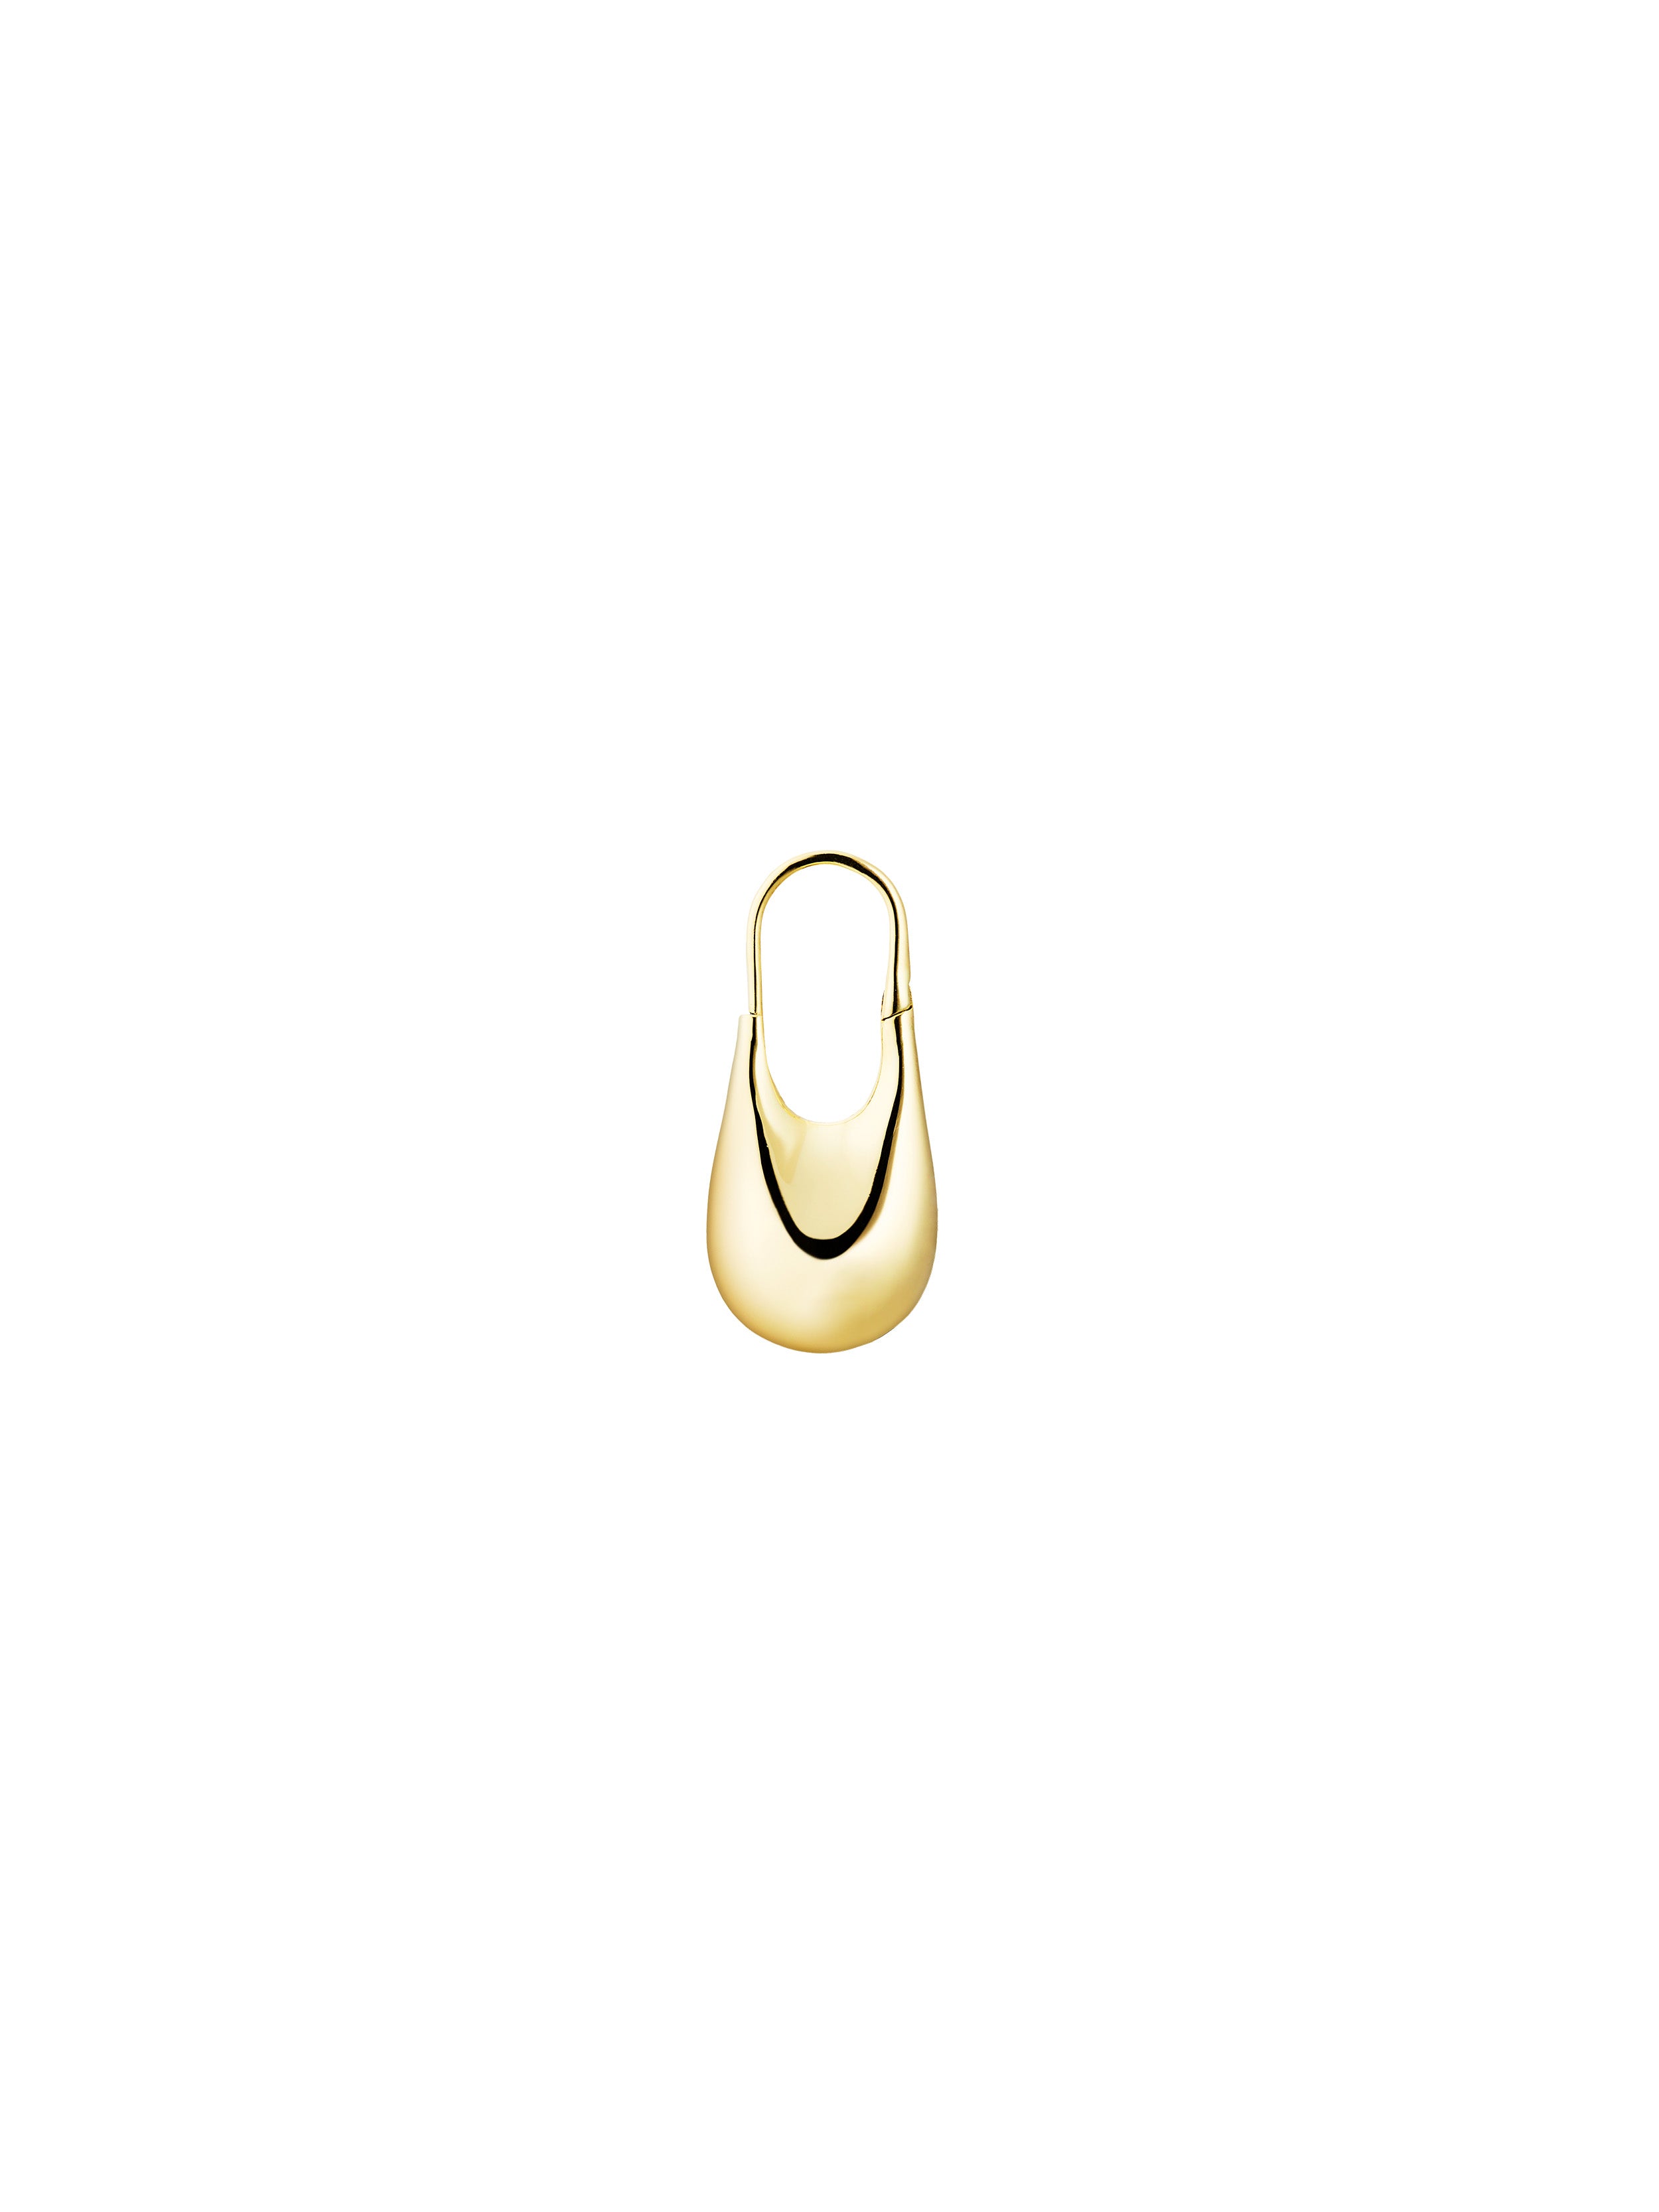 KINRADEN APS DORIC SMALL Earring - 18k gold Earrings